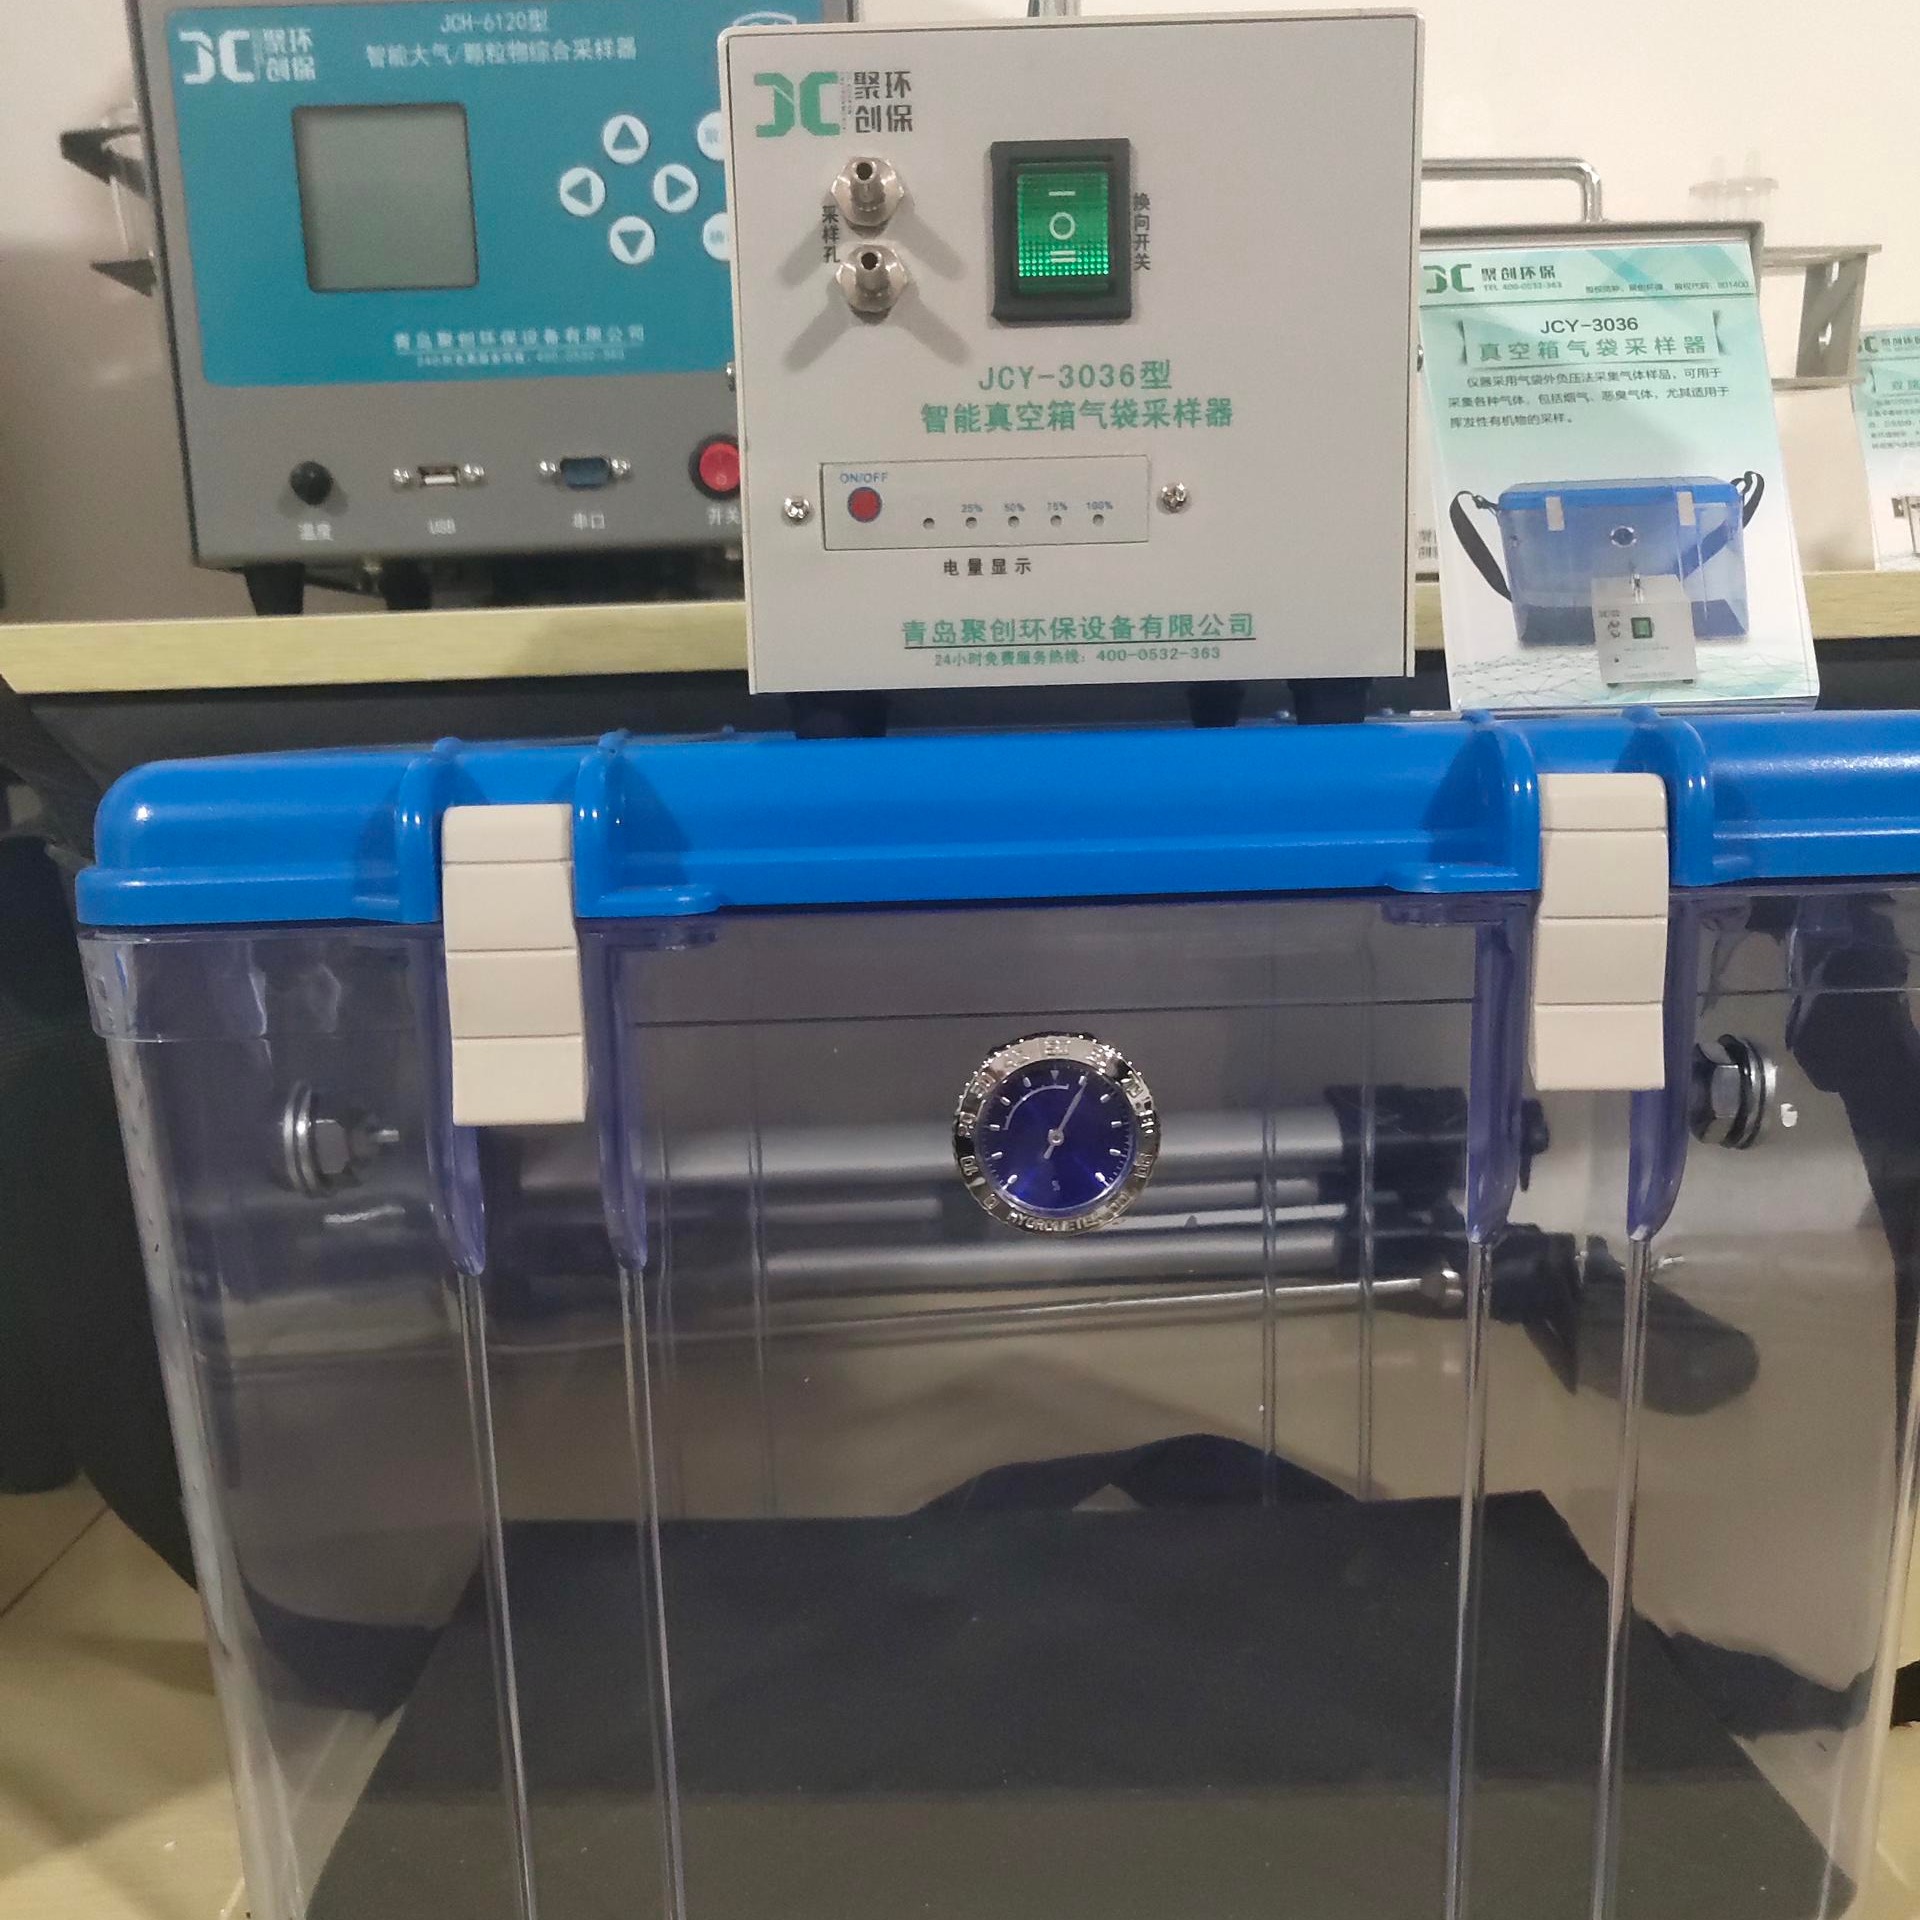 青岛聚创真空箱气袋采样器JCY-3036，挥发性有机物采样器，真空箱采样器图片